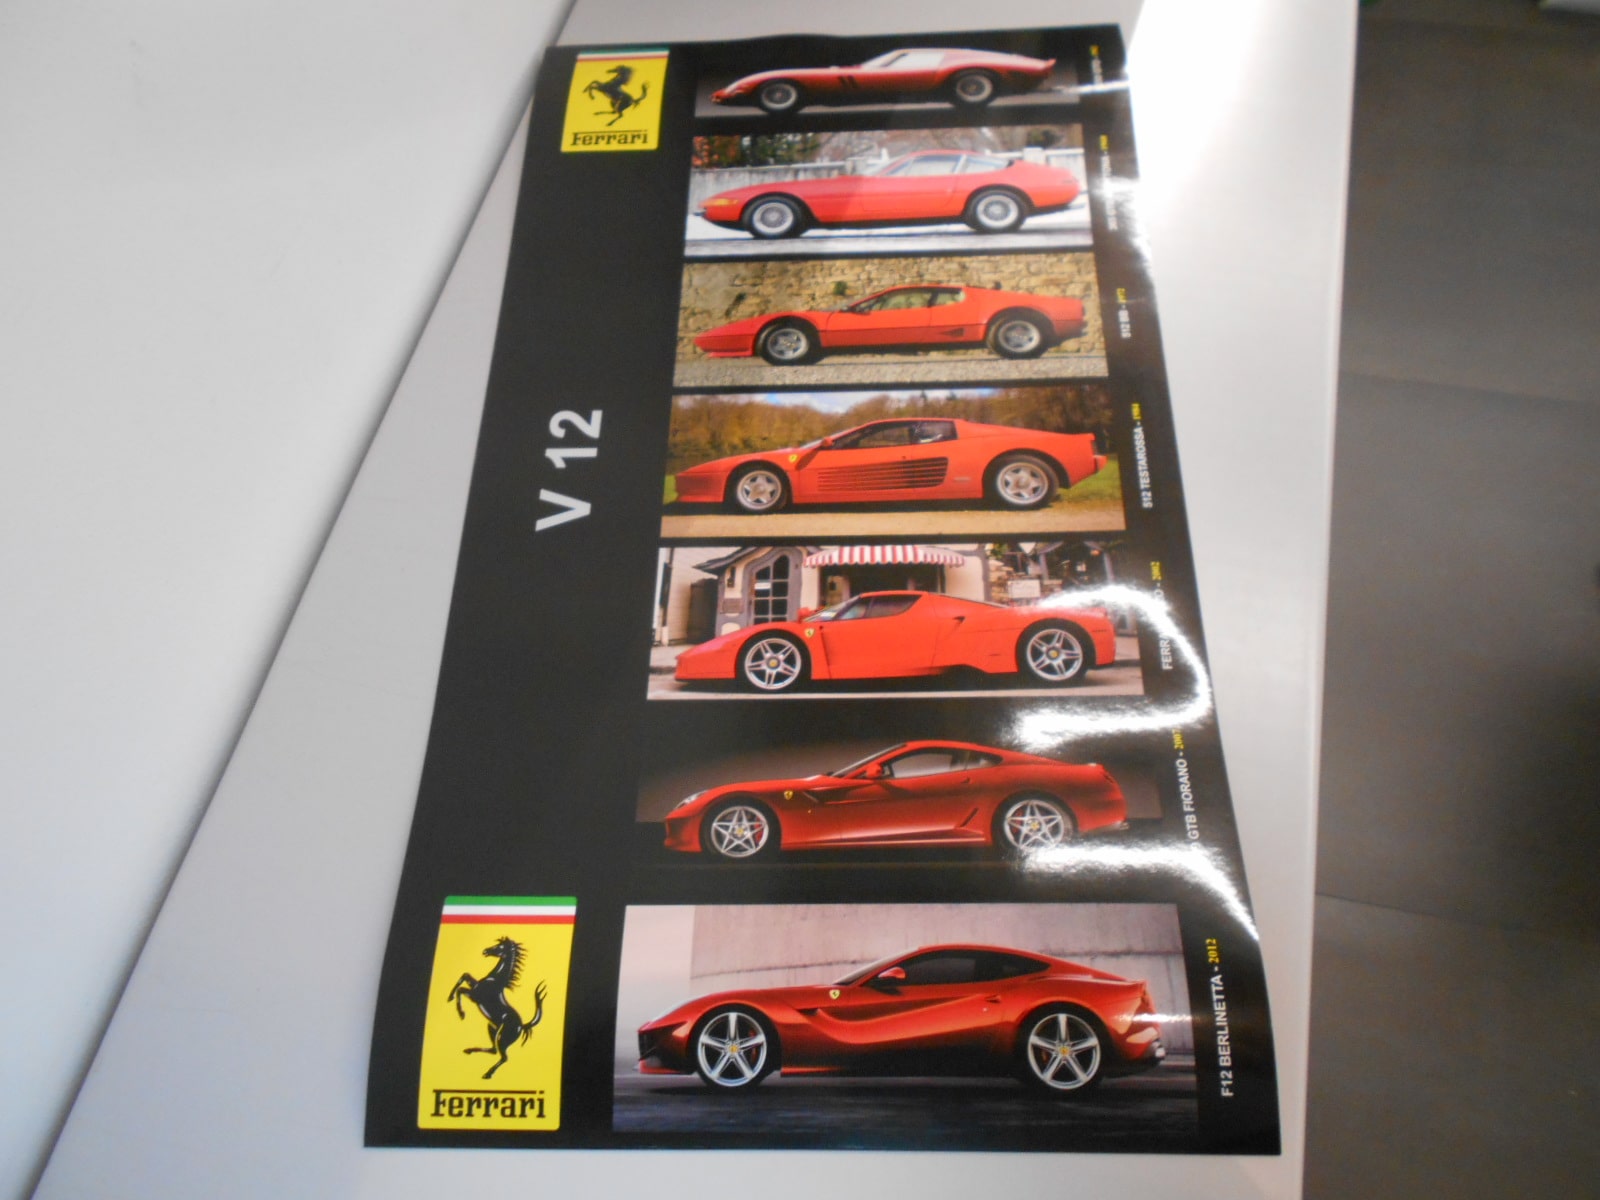 Ferrari poster celebrativo delle auto con motore V12